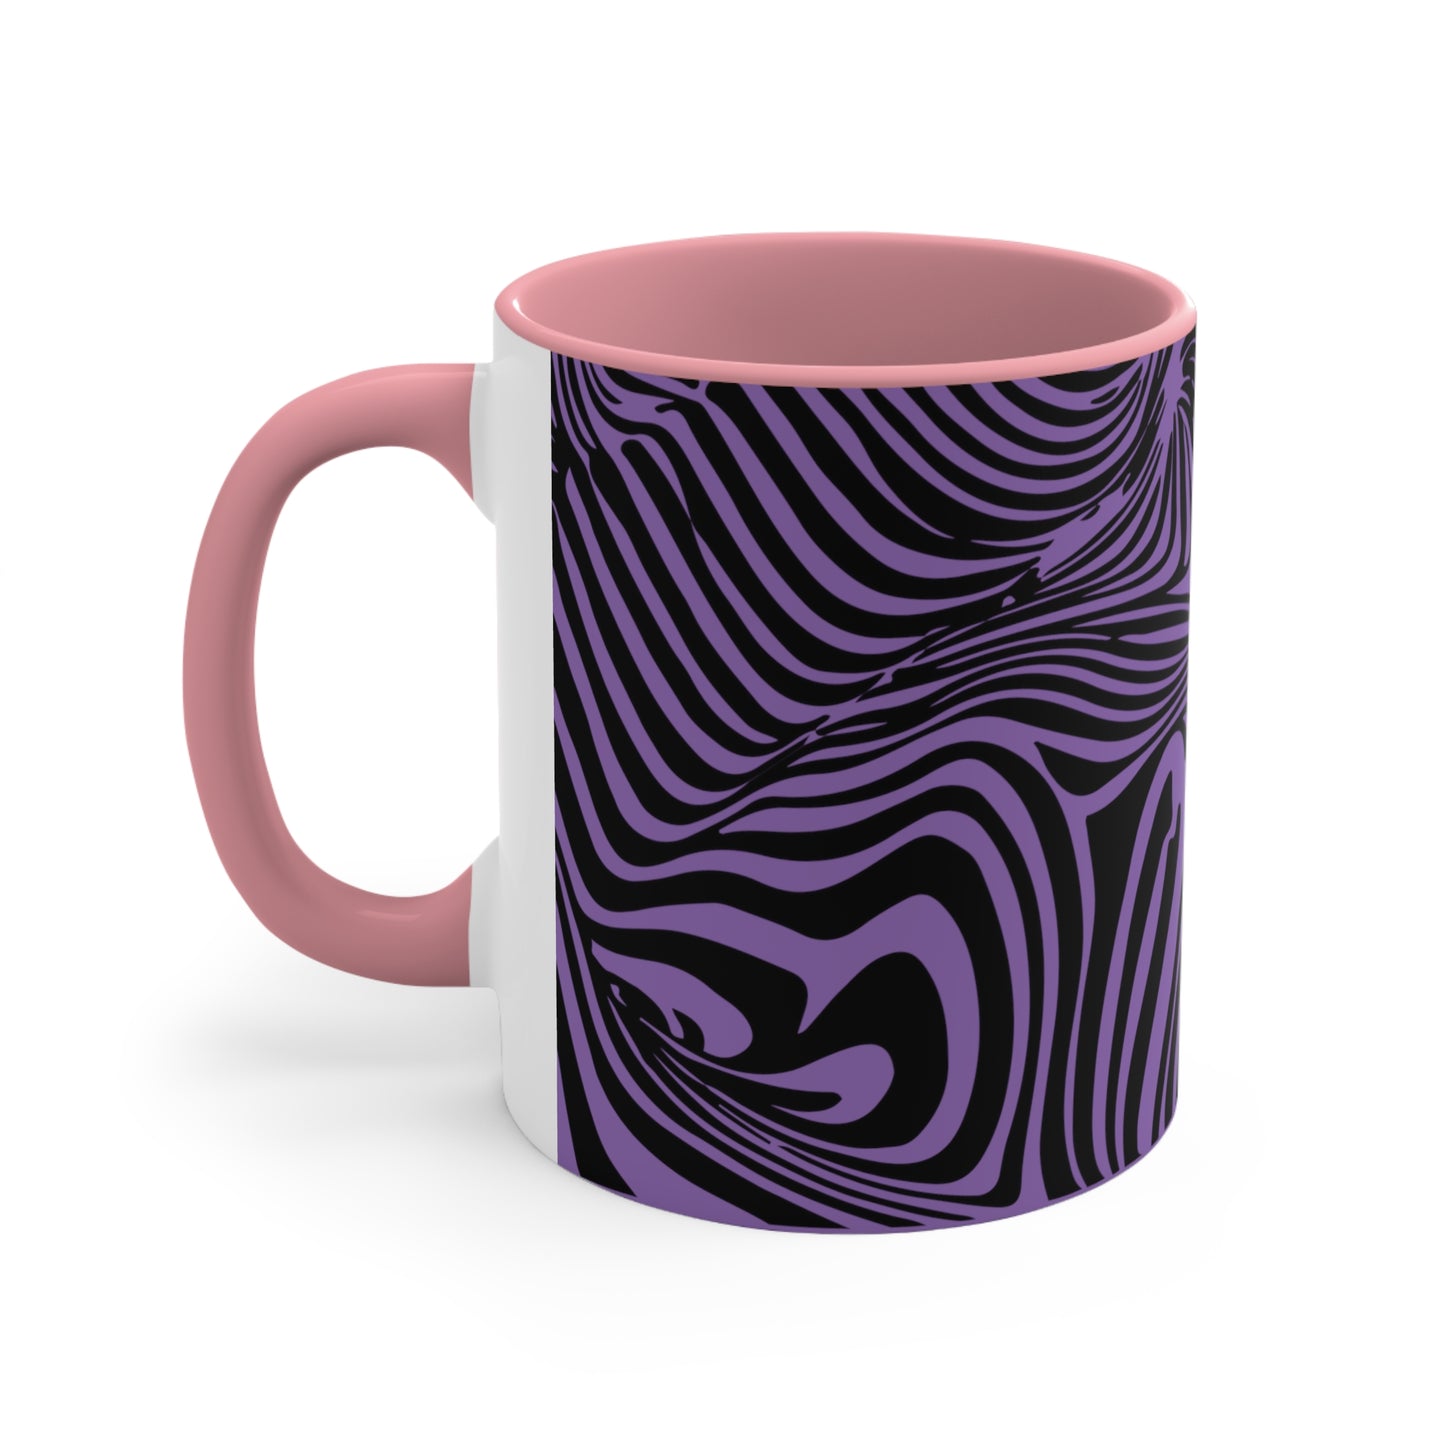 Zebra Swirl on Purple